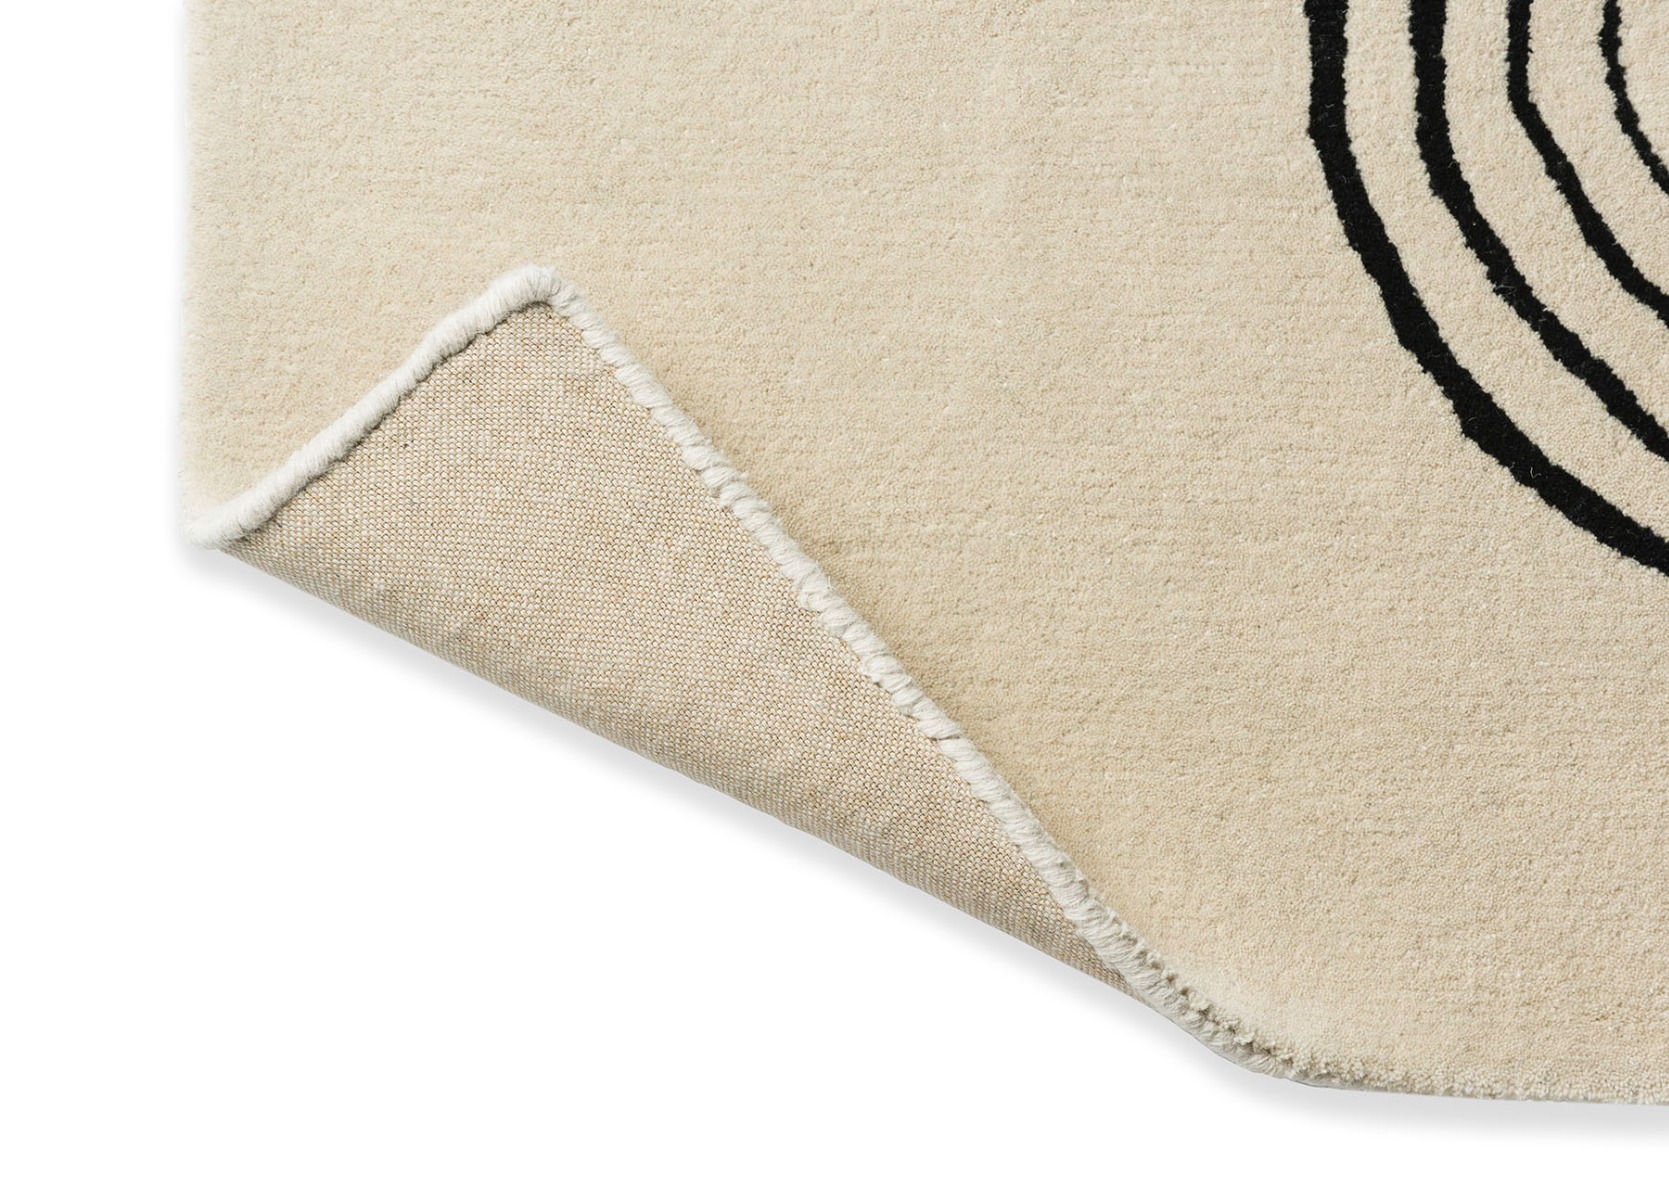 Decor Flow Soft Sand Handwoven Rug ☞ Size: 5' 3" x 7' 7" (160 x 230 cm)